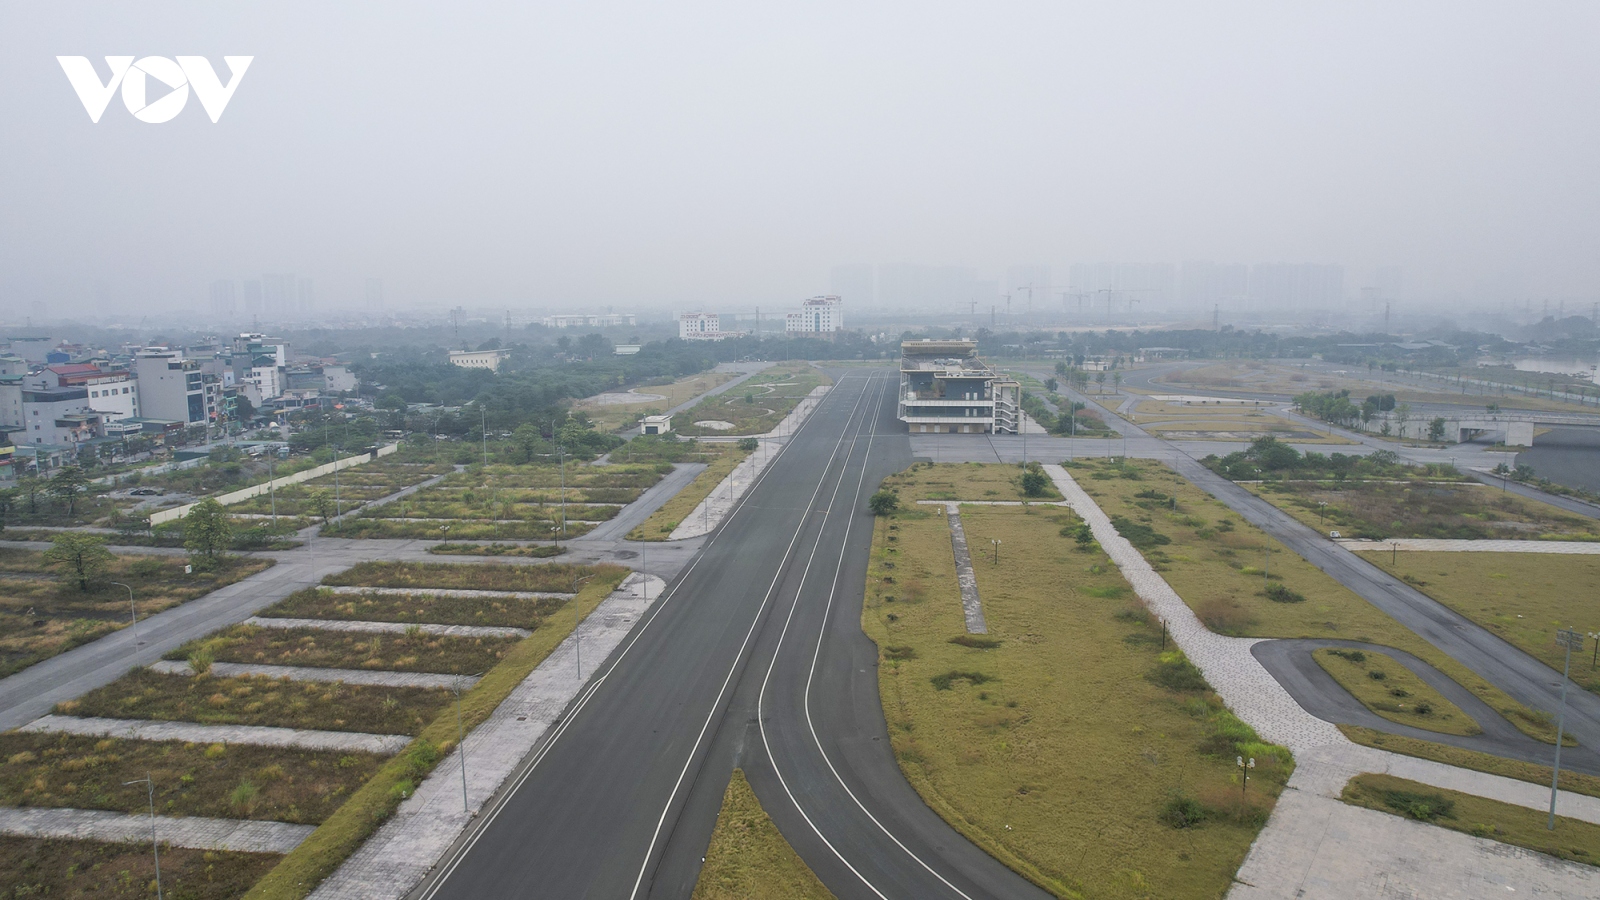 Đường đua F1 ở Hà Nội bị bỏ hoang, cỏ dại và rác thải đua nhau chiếm chỗ